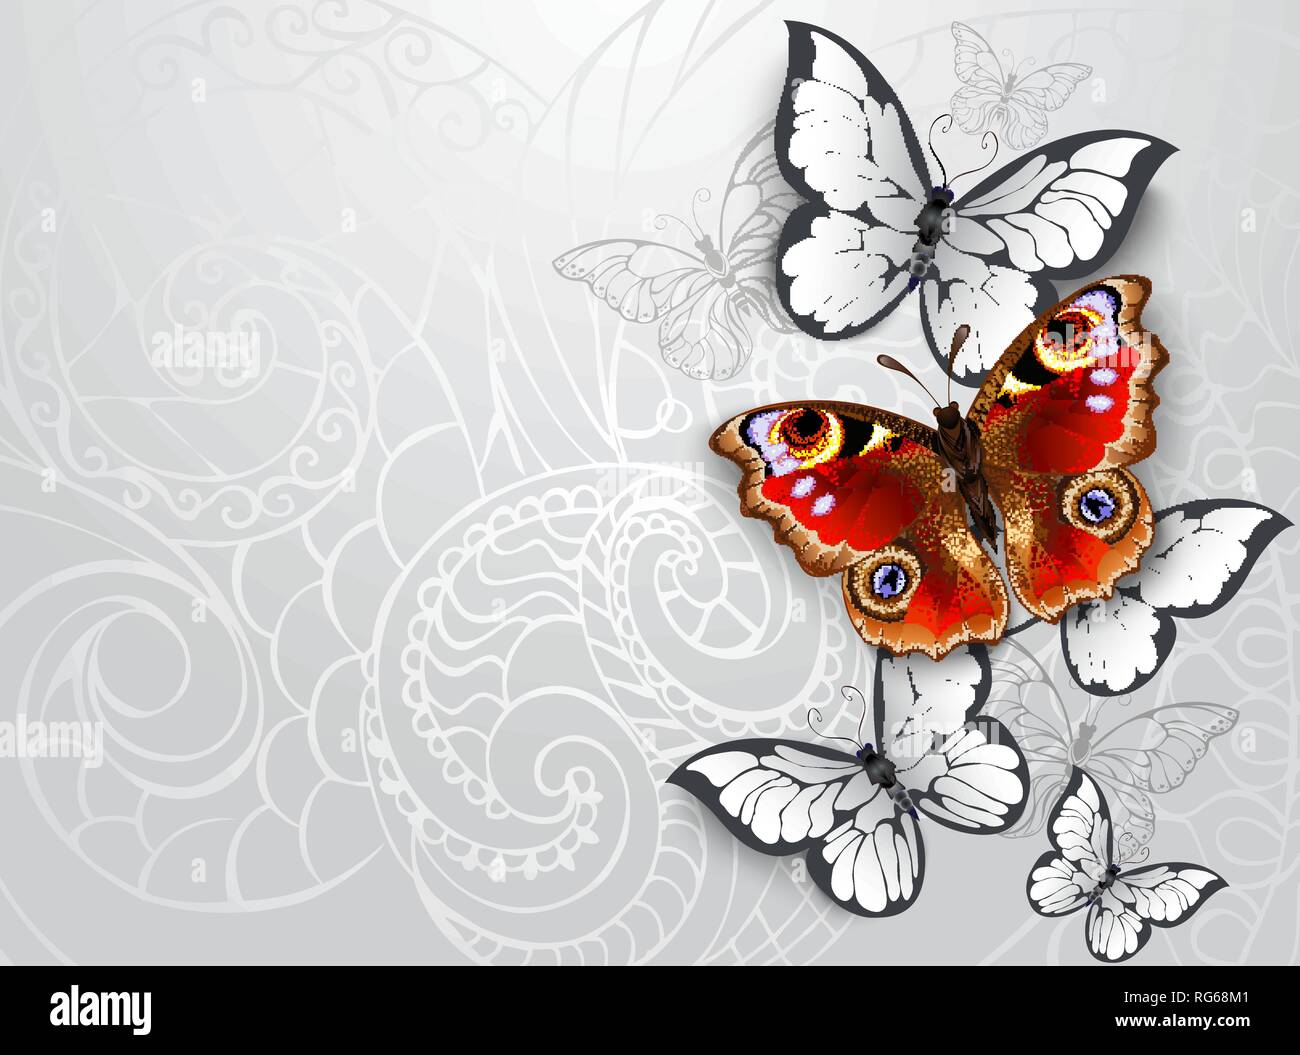 Rot, realistisch, texturierte Schmetterling peacock Auge mit weißen Schmetterlinge auf grau gemusterten Hintergrund. Stock Vektor